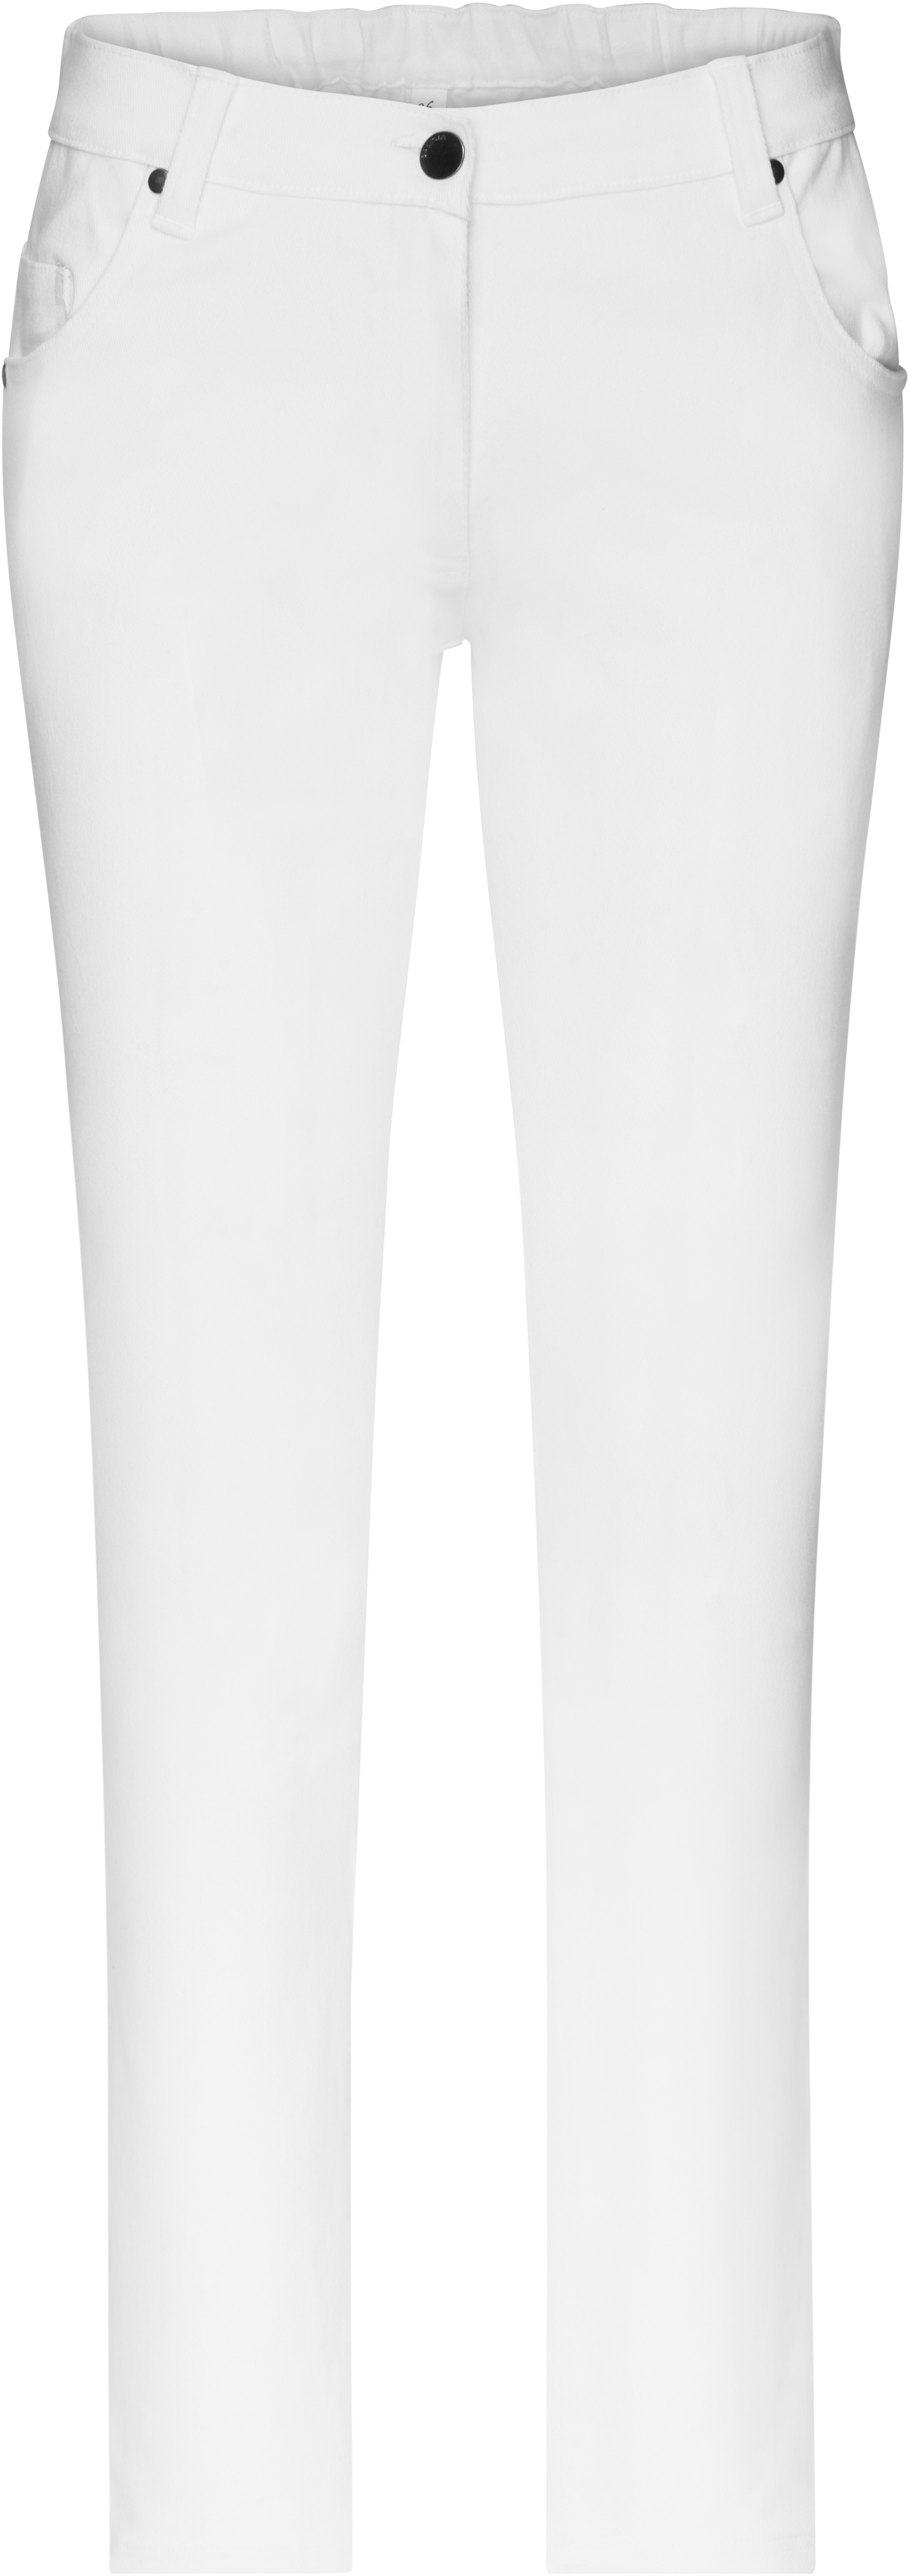 Dámské elastické kalhoty JN 3001 Barva: bílá, Velikost: 50